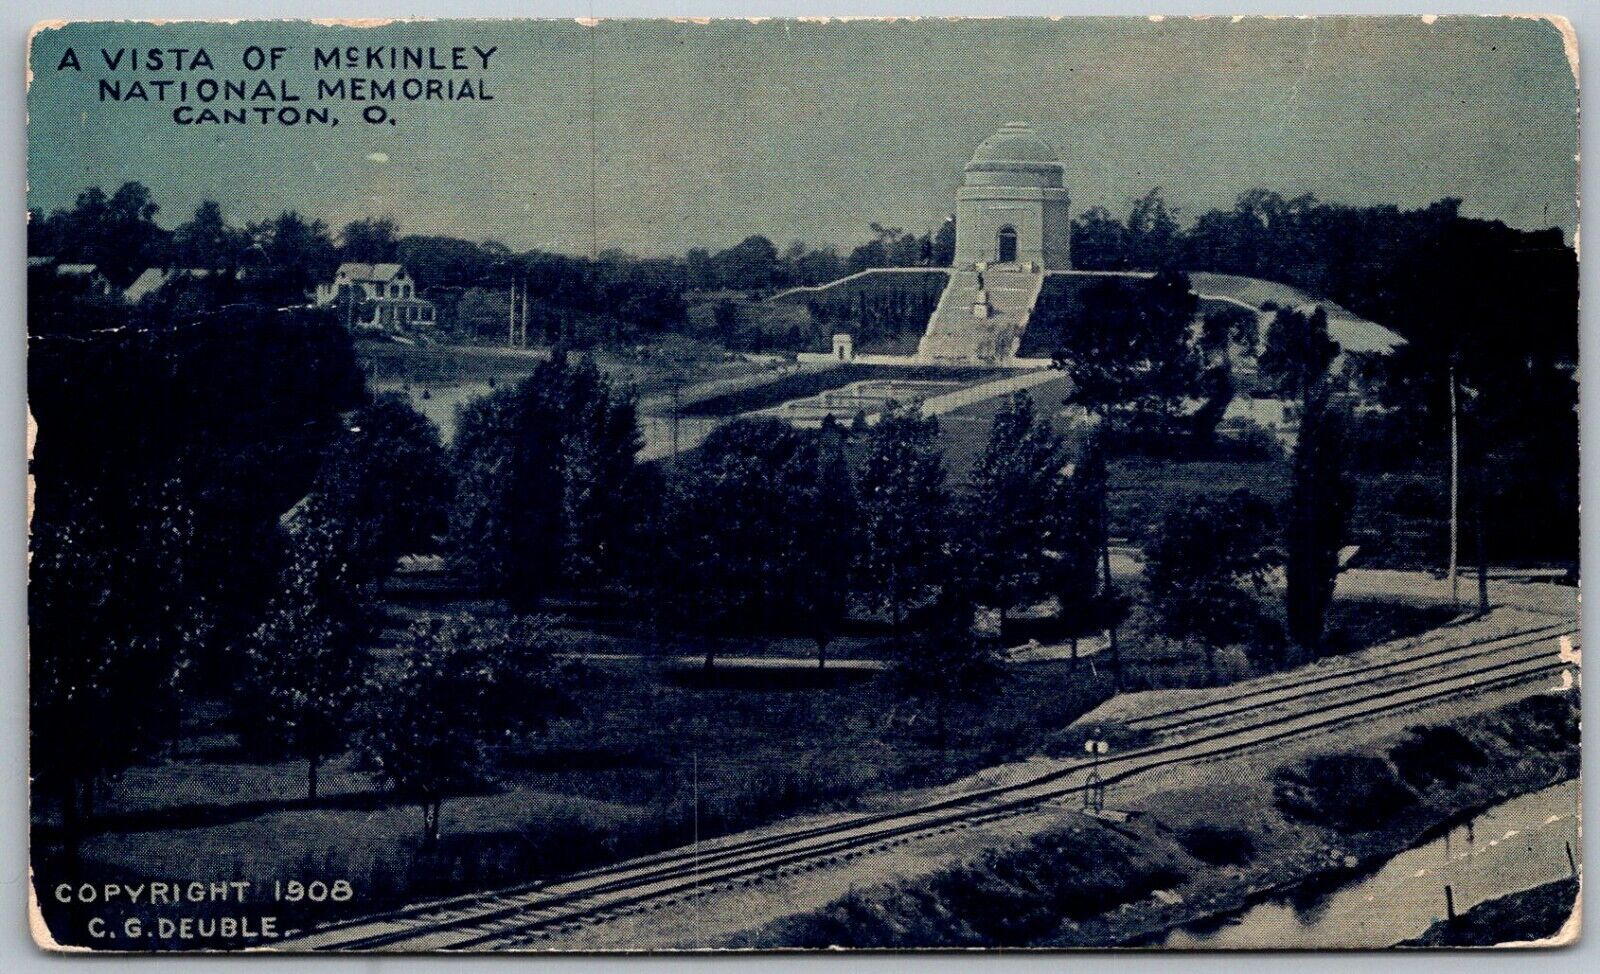 Canton Ohio 1908 Postcard A Vista of President McKinley National Memorial